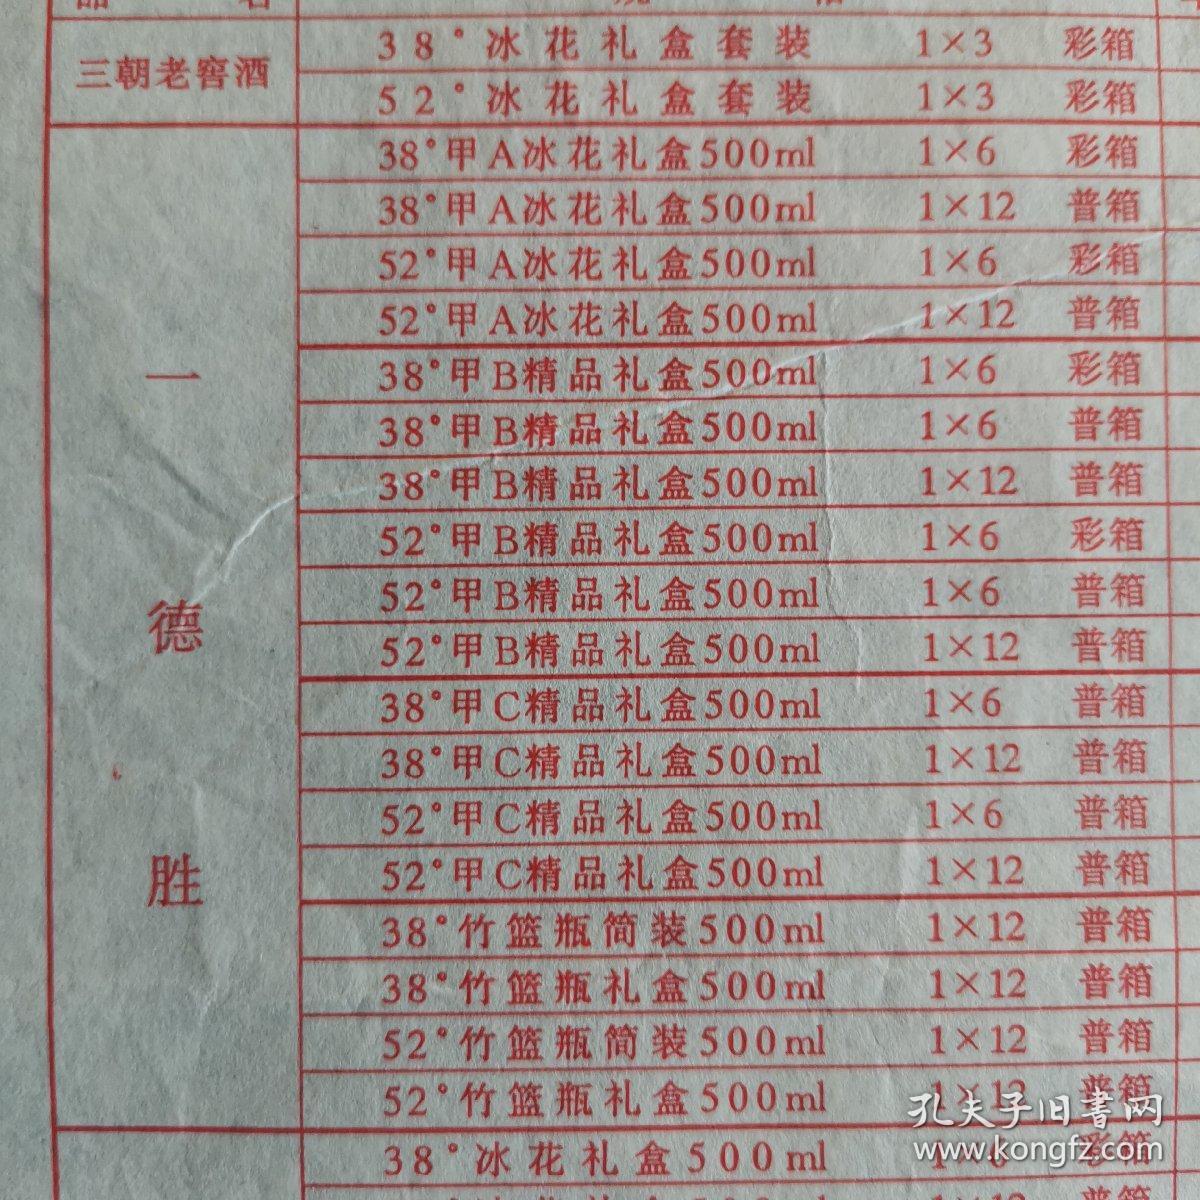 【酒类价格】四川酒，中国老字号，三朝老窖系列酒销售价格表